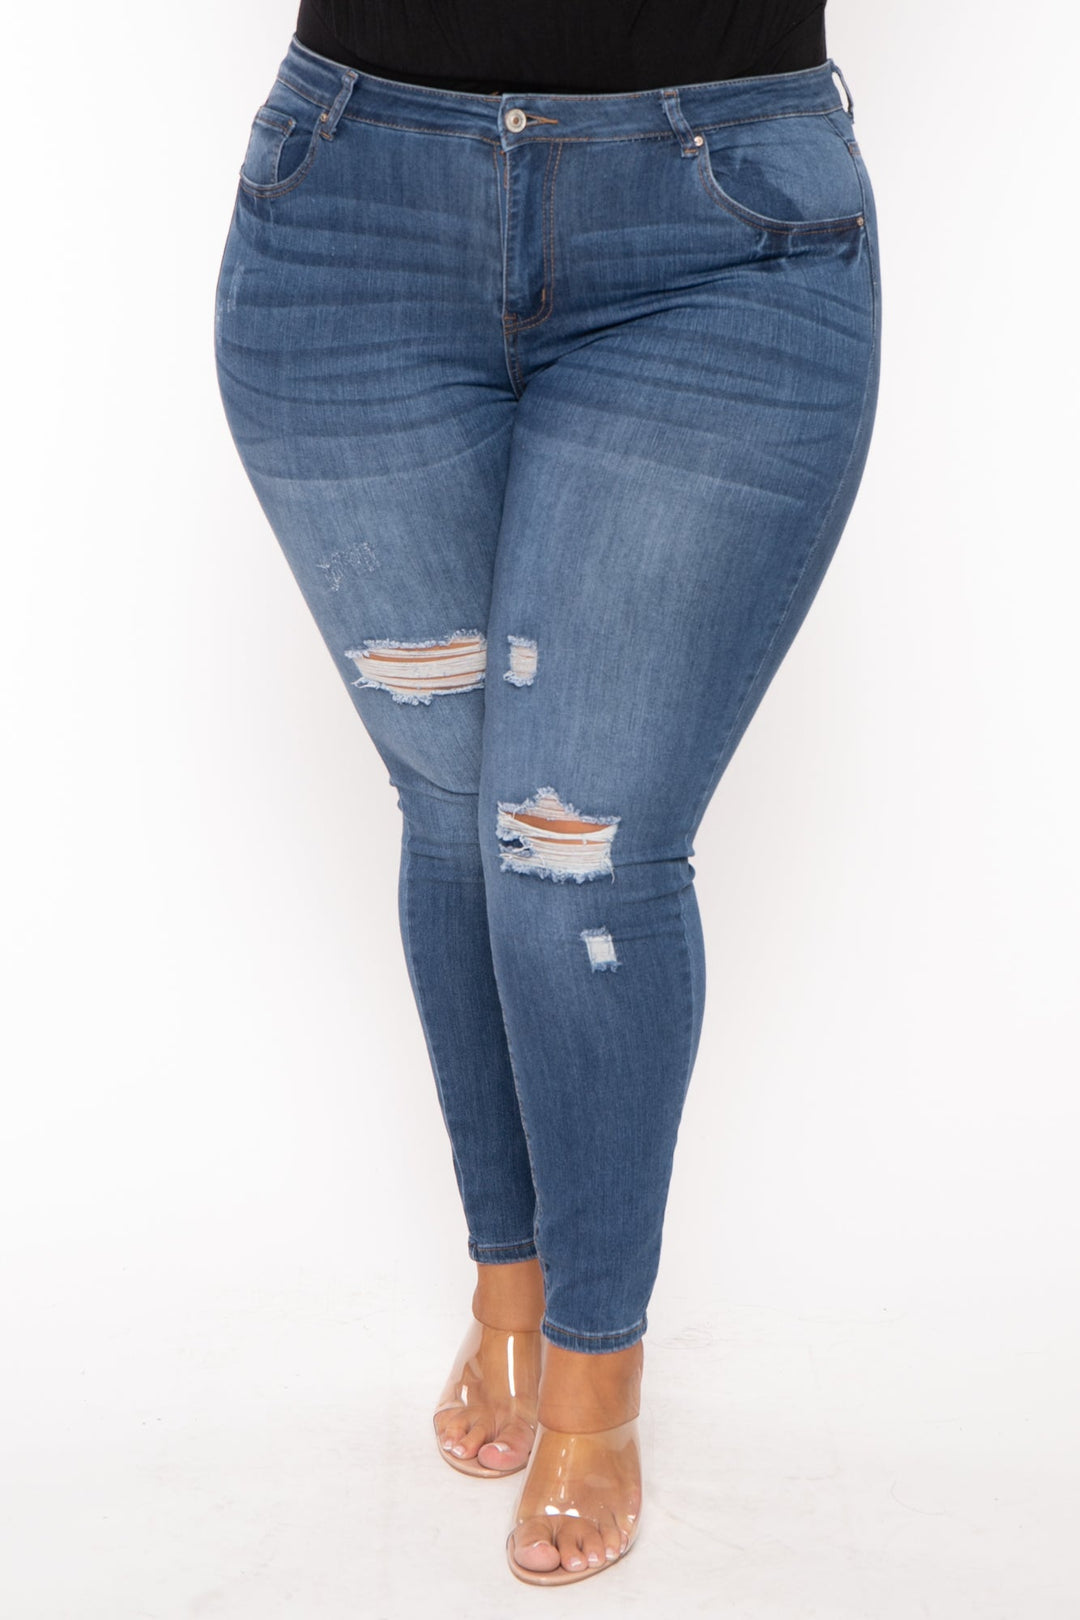 Wax Jean Jeans 1X / Medium Wash Plus Size Distressed Stretch Skinny  Jeans - Medium Wash